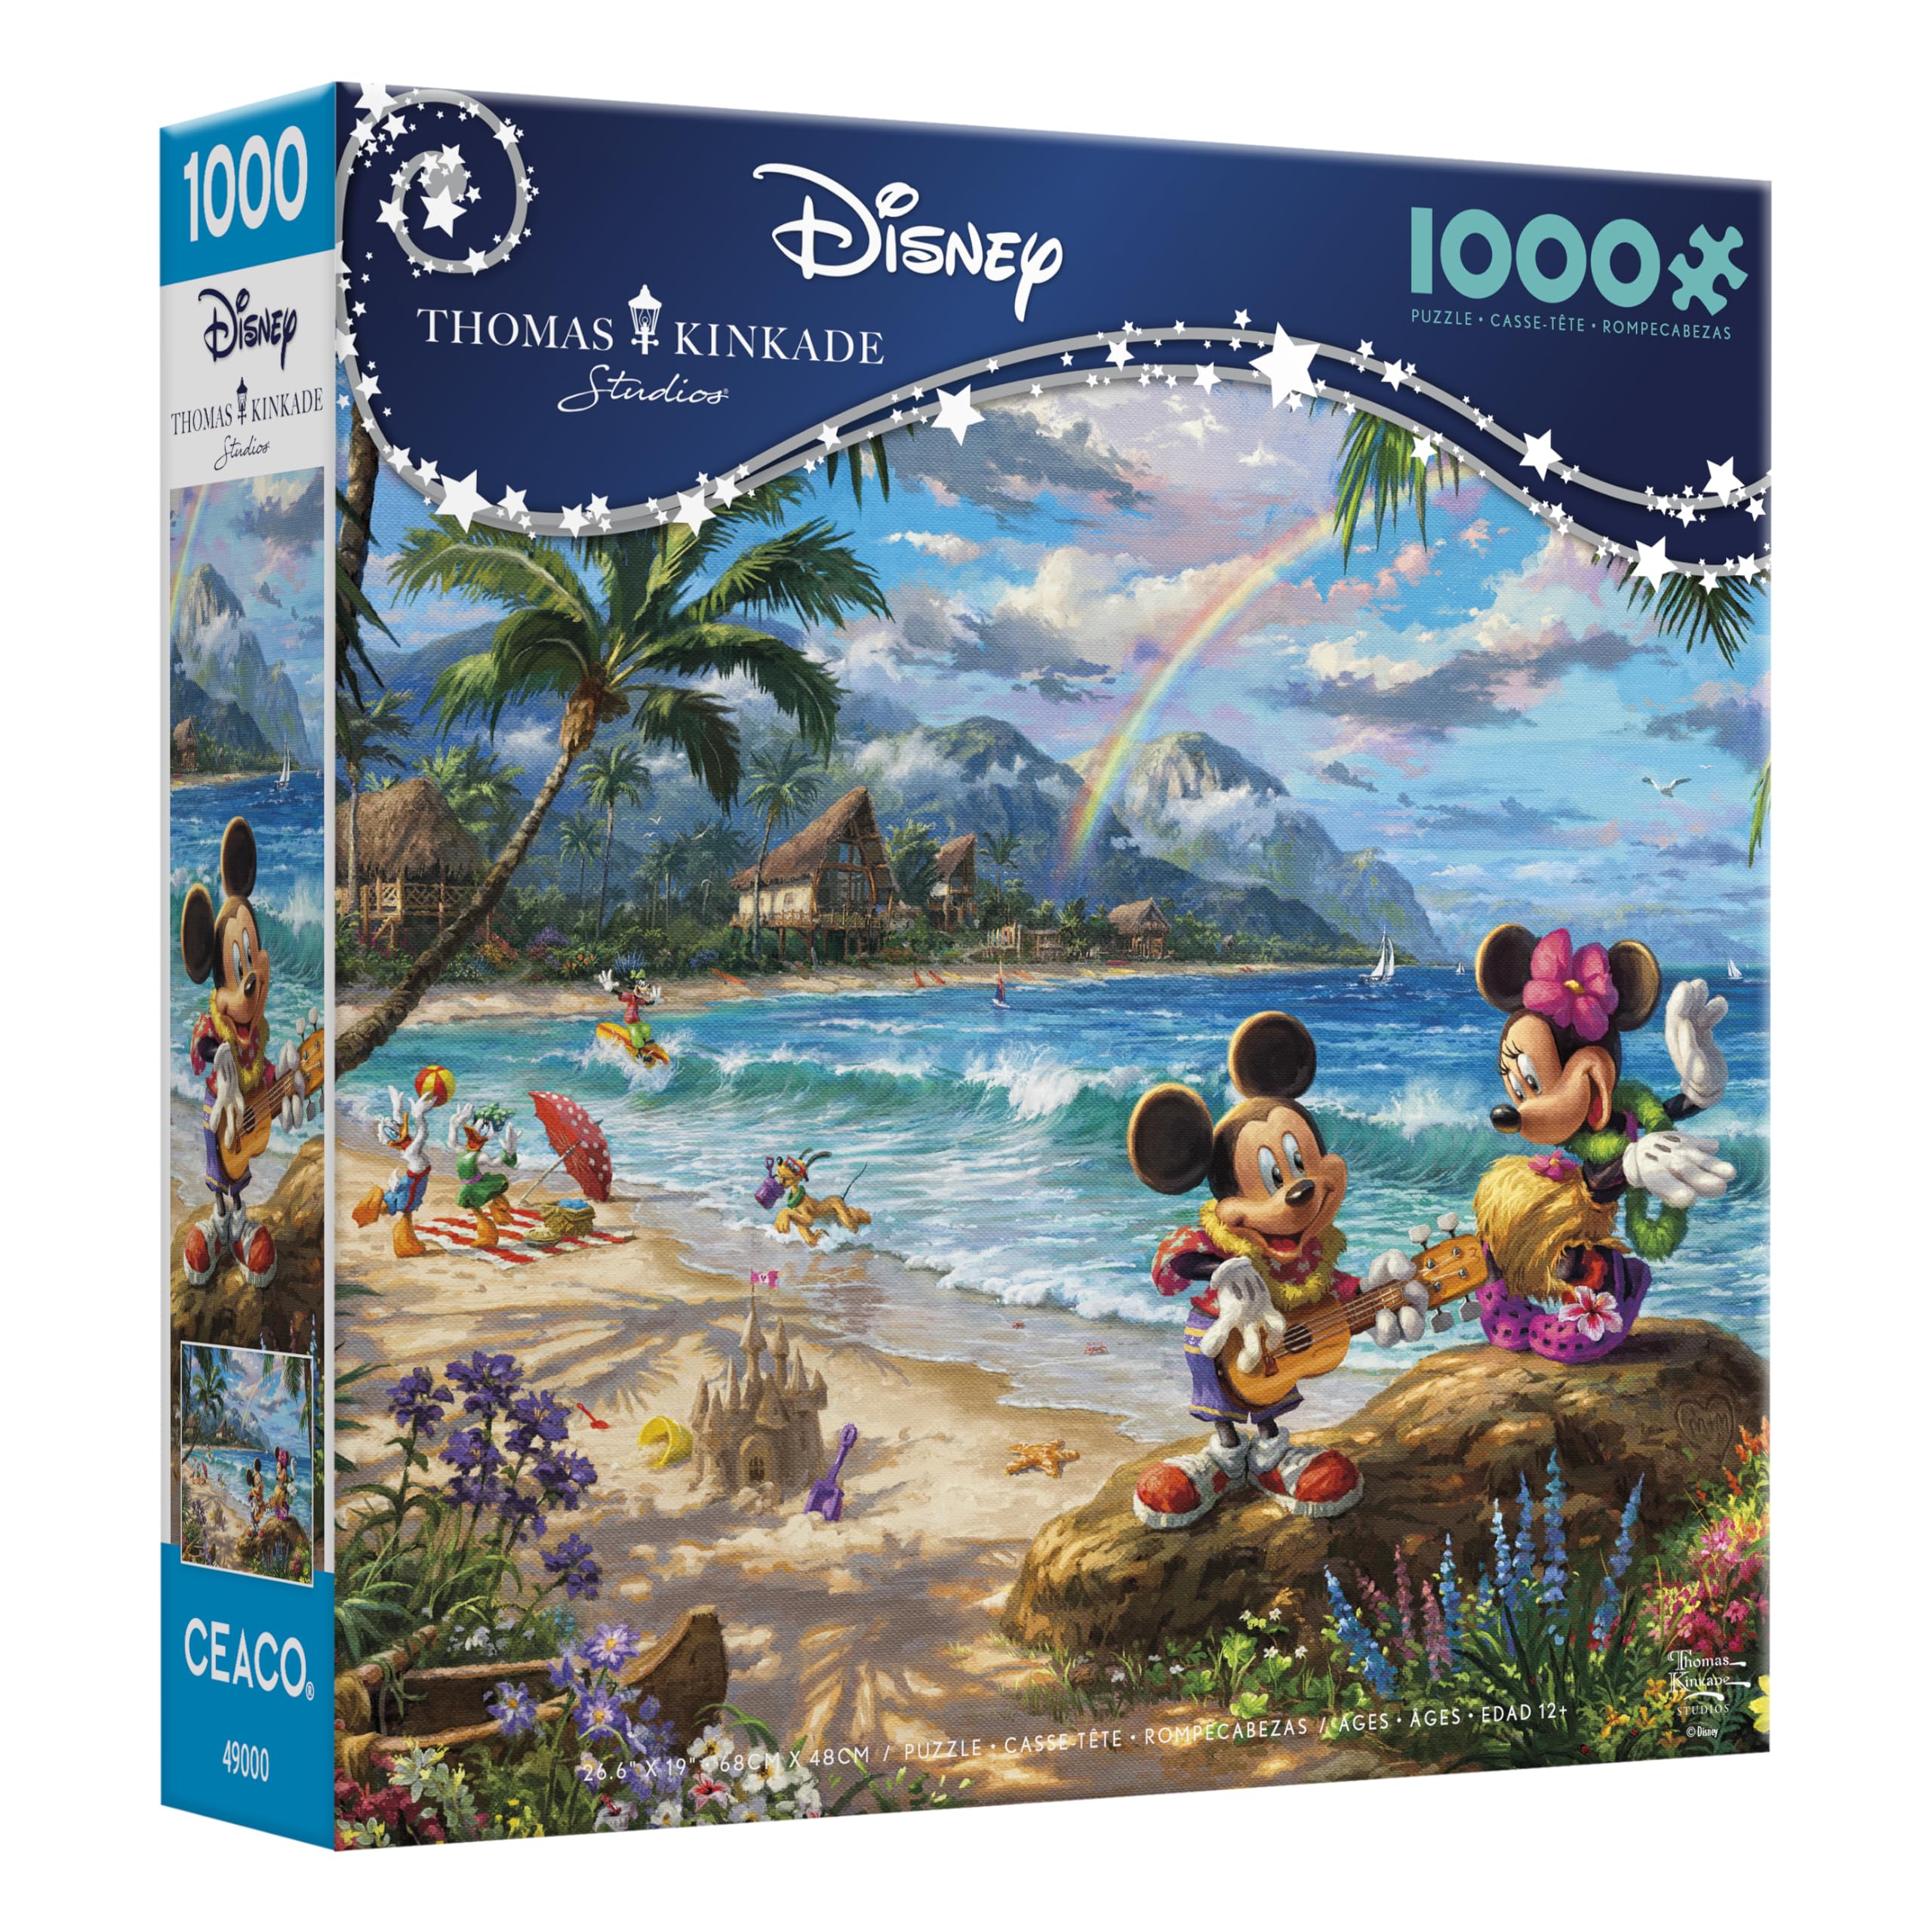 Ceaco - Thomas Kinkade - Disney - Mickey & Minnie in Hawaii - 1000 Piece Jigsaw Puzzle